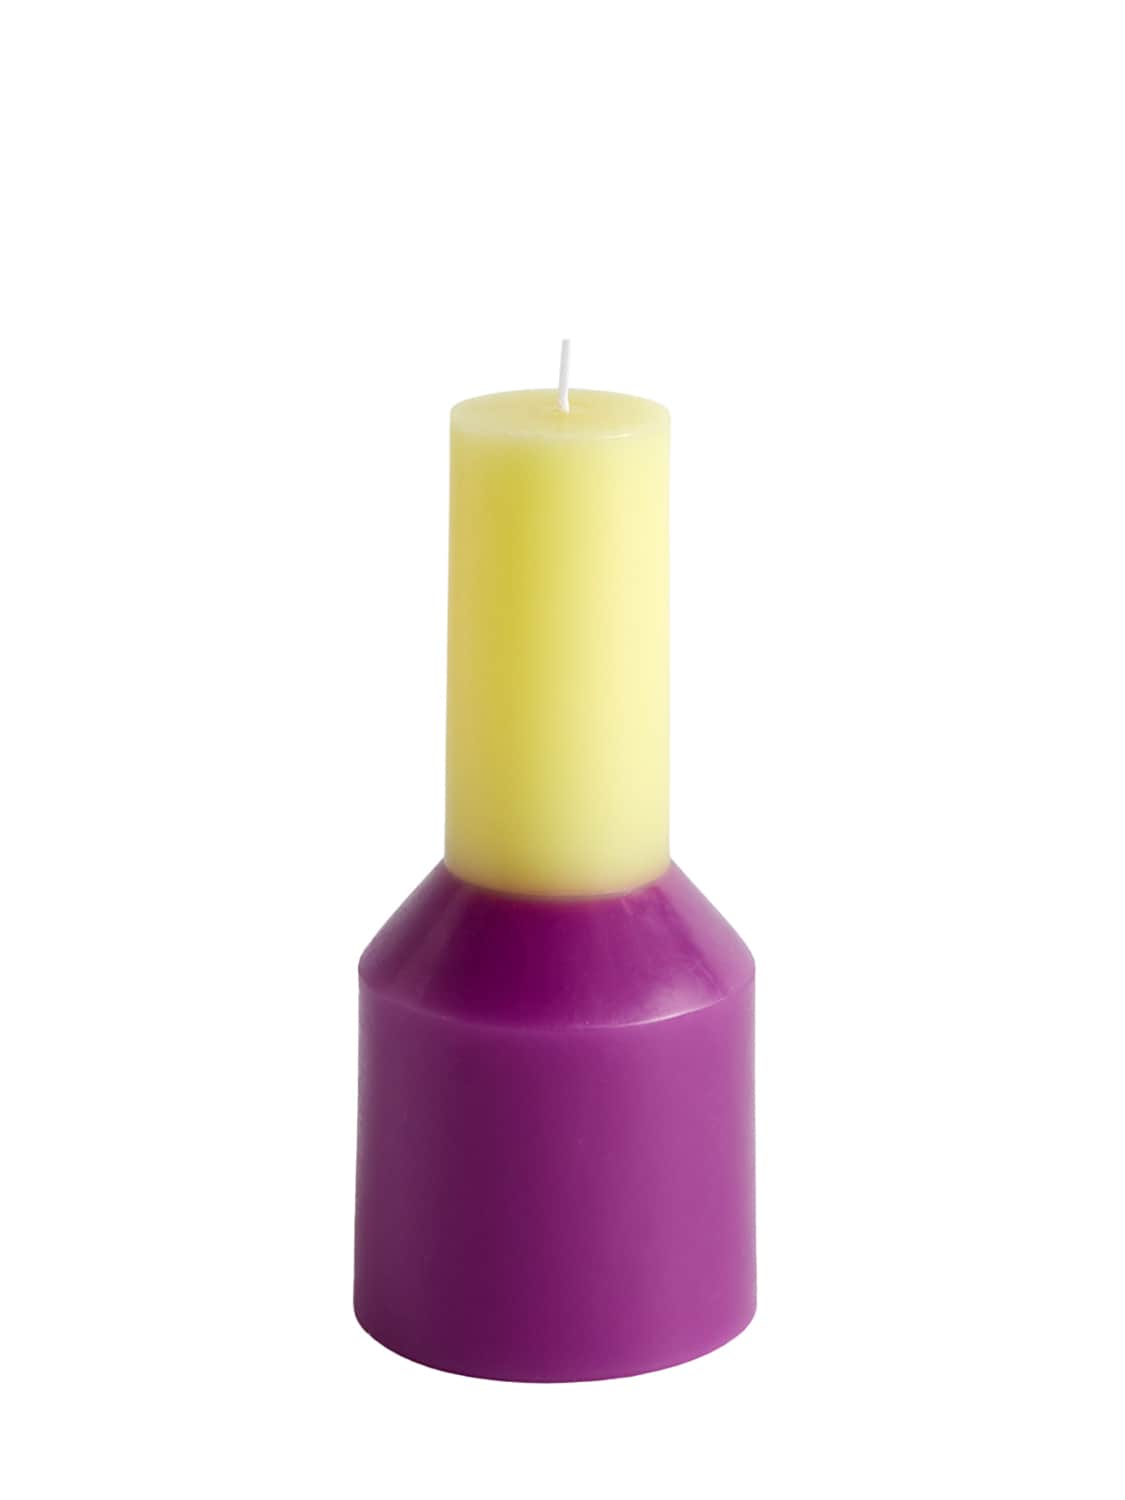 Hay Small Pillar Candle In Fuchsia